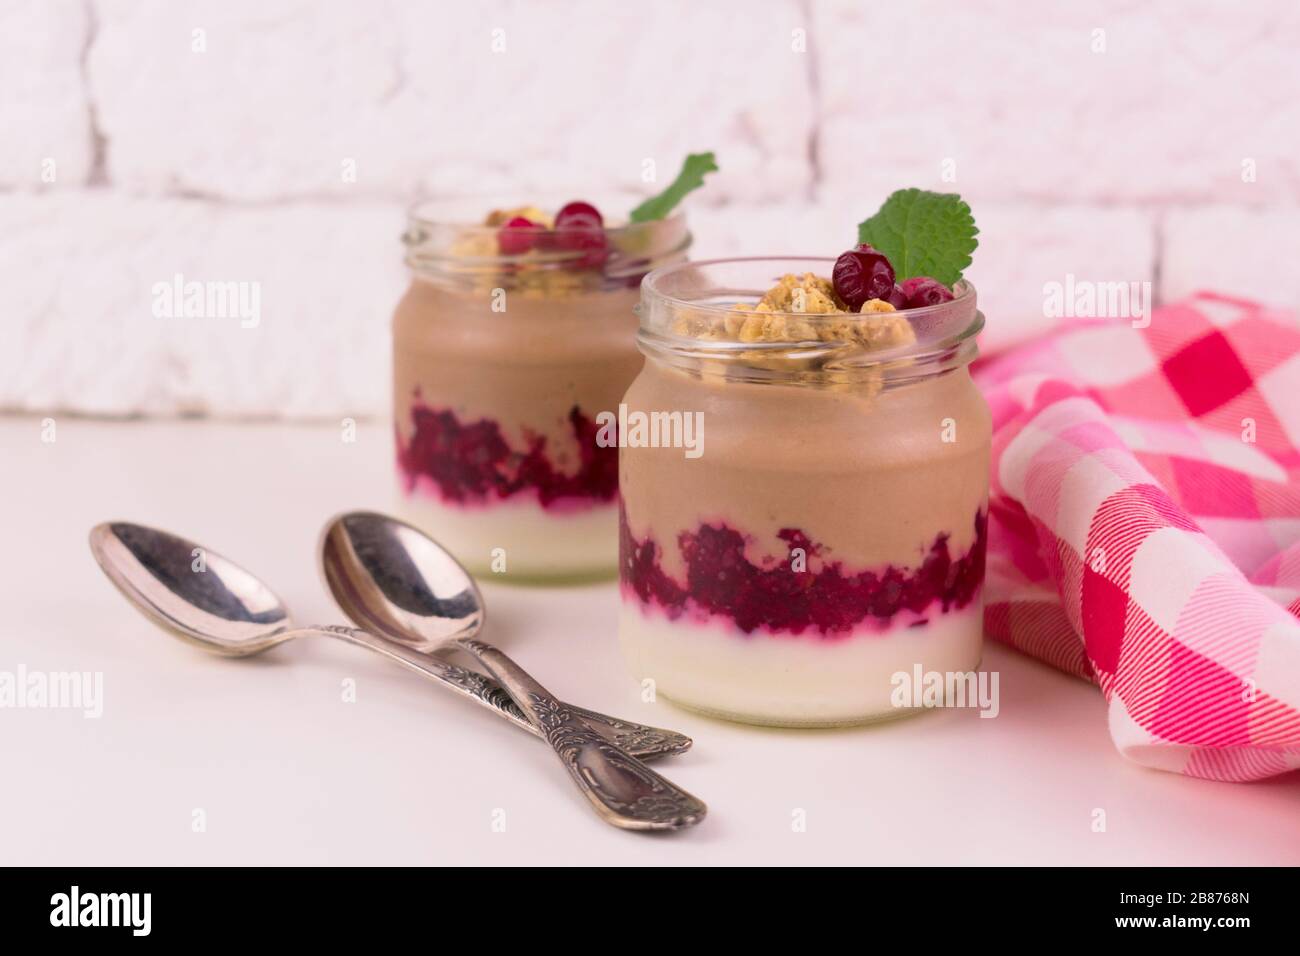 Zwei Portionen Schoko-Vanille-Pudding mit Beeren und einem Glas auf weißem Hintergrund. Stockfoto